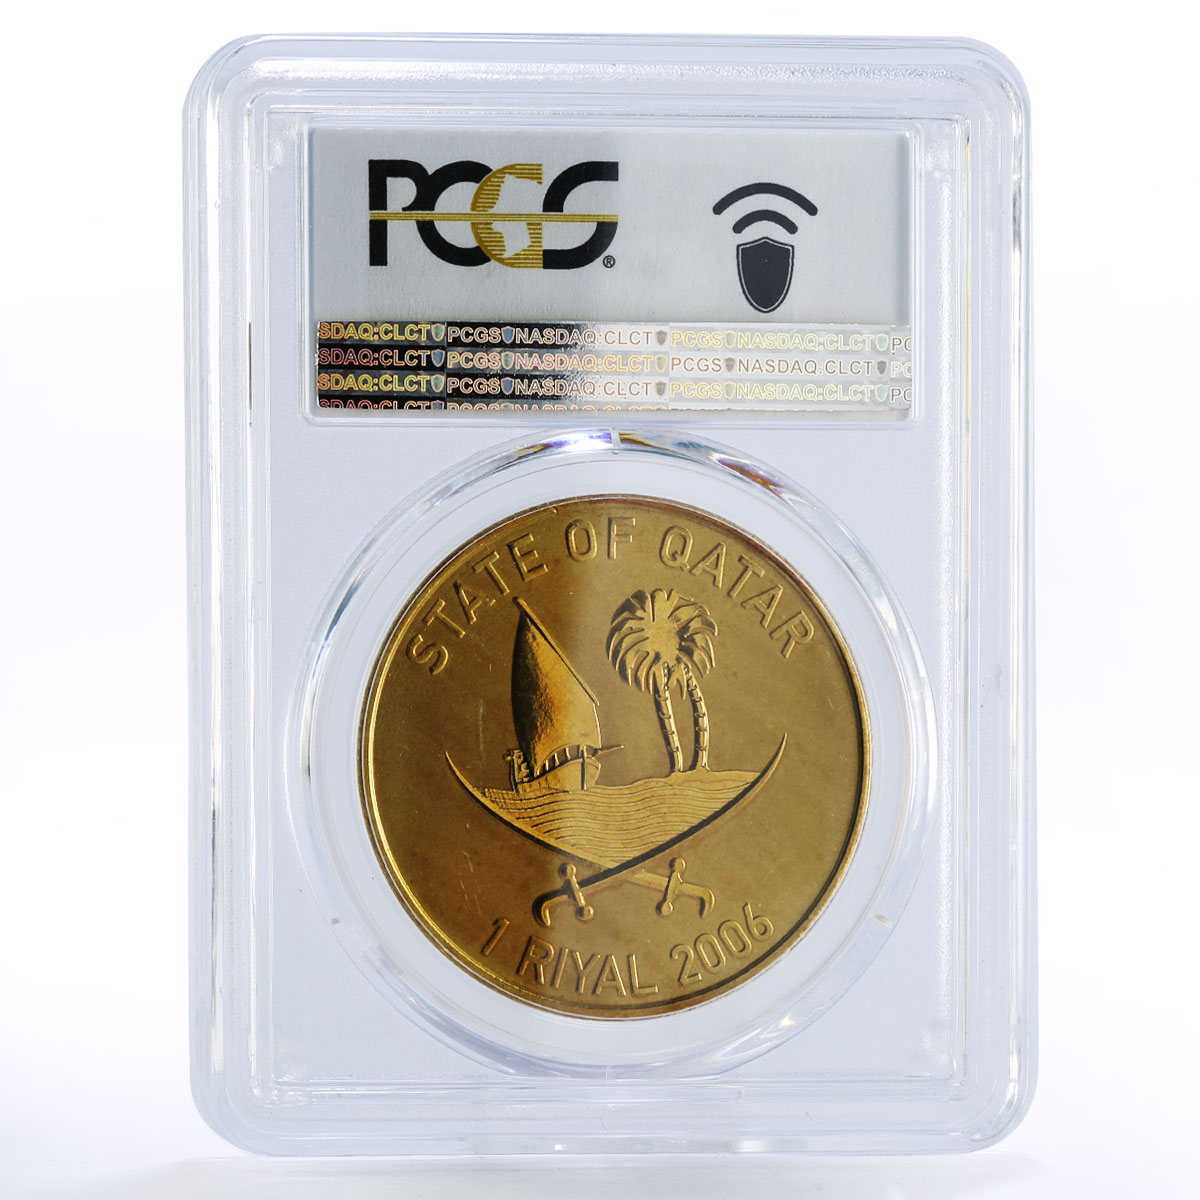 Qatar 1 riyal Asian Games Enviroment MS68 PCGS aluminium-bronze coin 2006